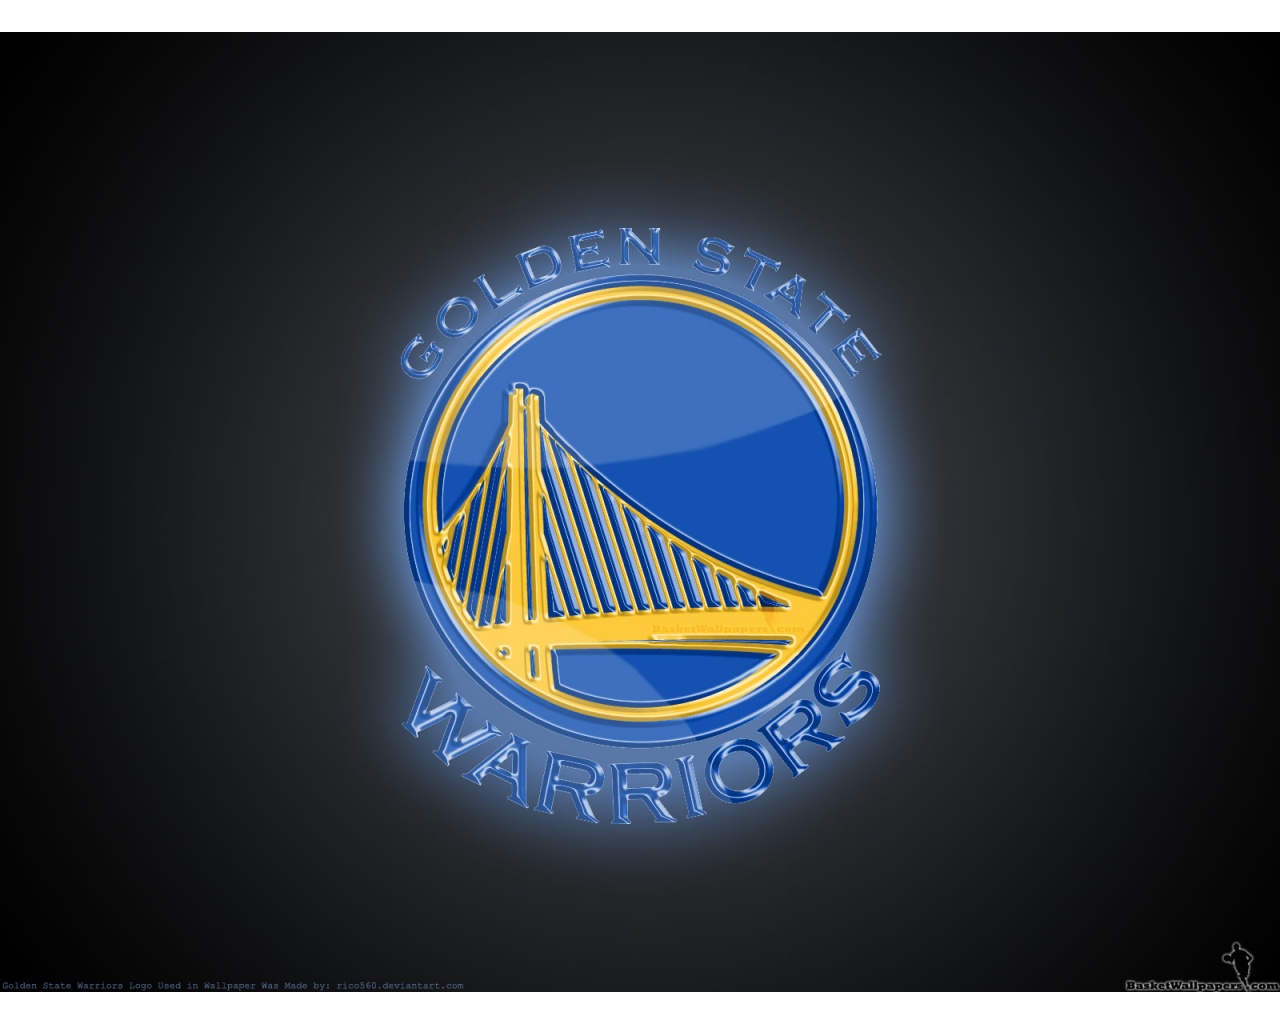 Golden State Warriors Finals Logo Wallpaper